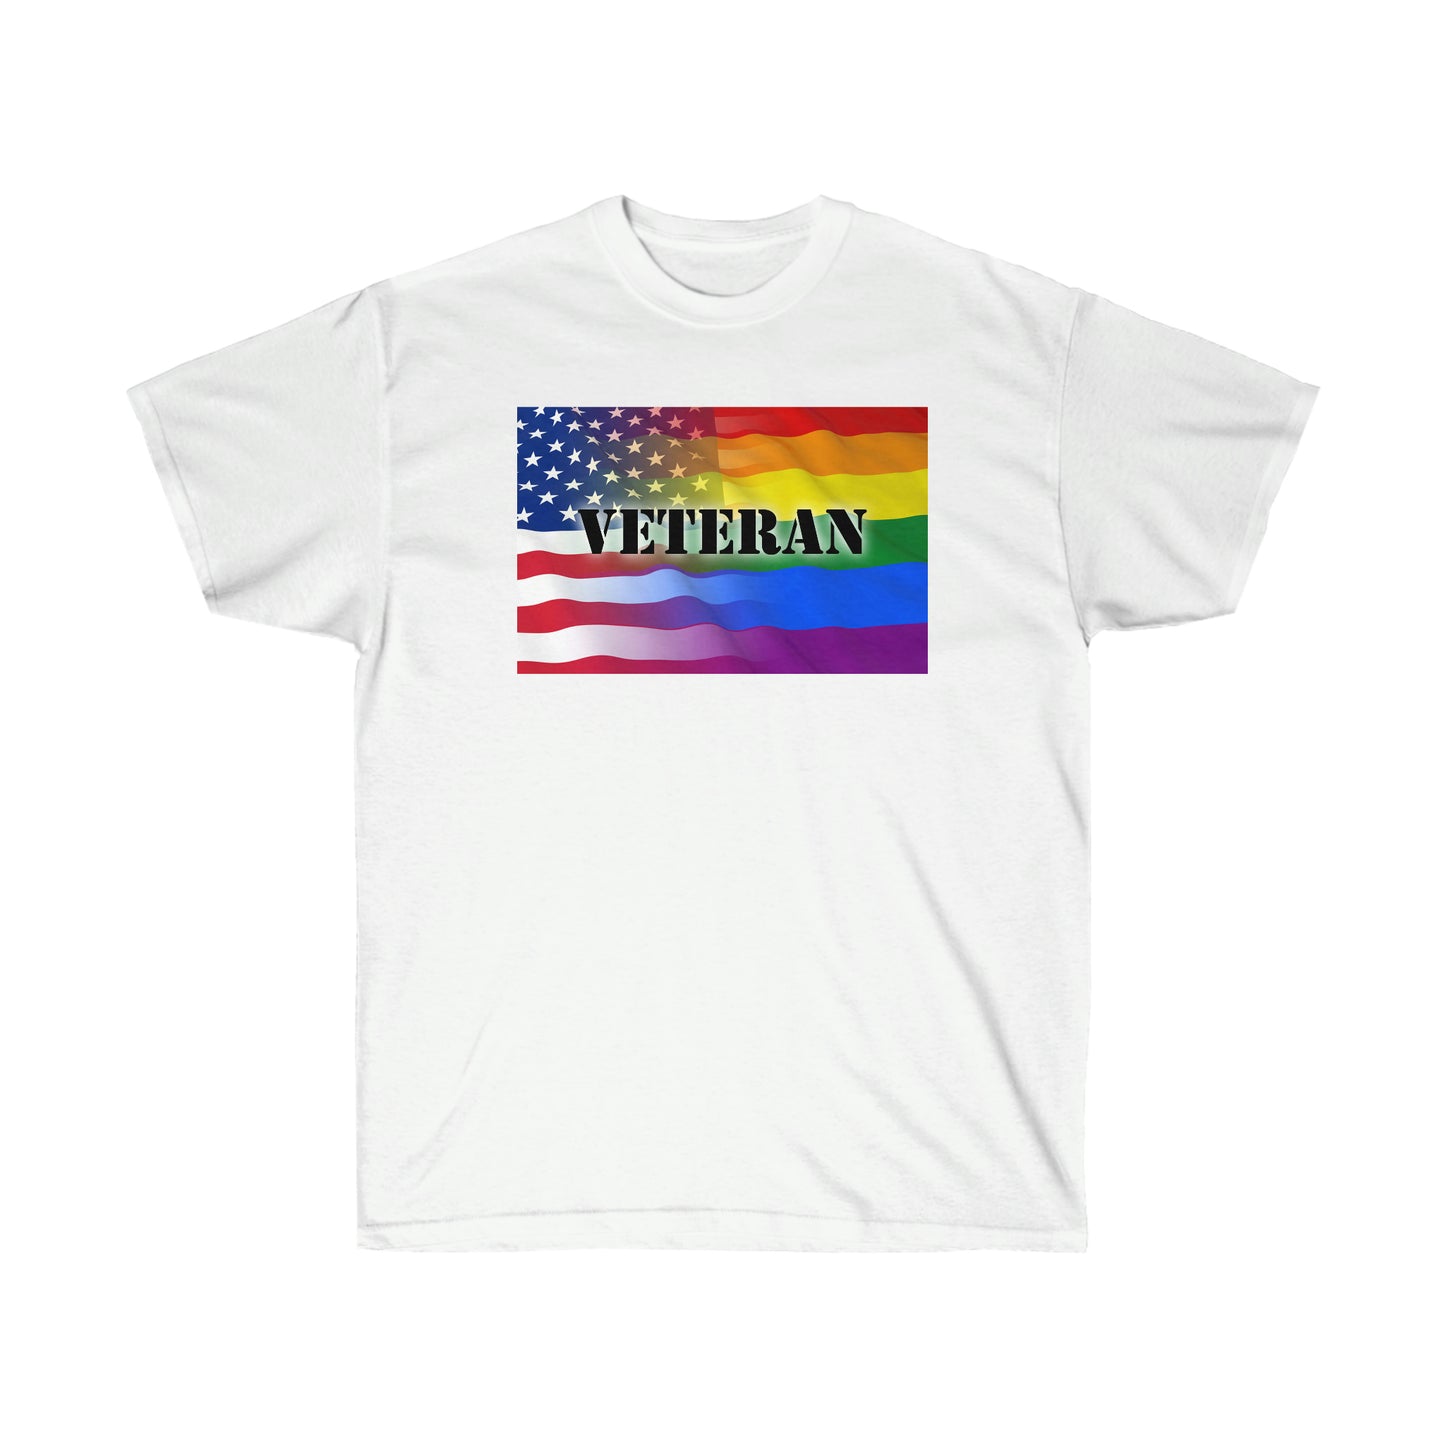 Camiseta unisex para adultos veteranos americanos LGBTQ